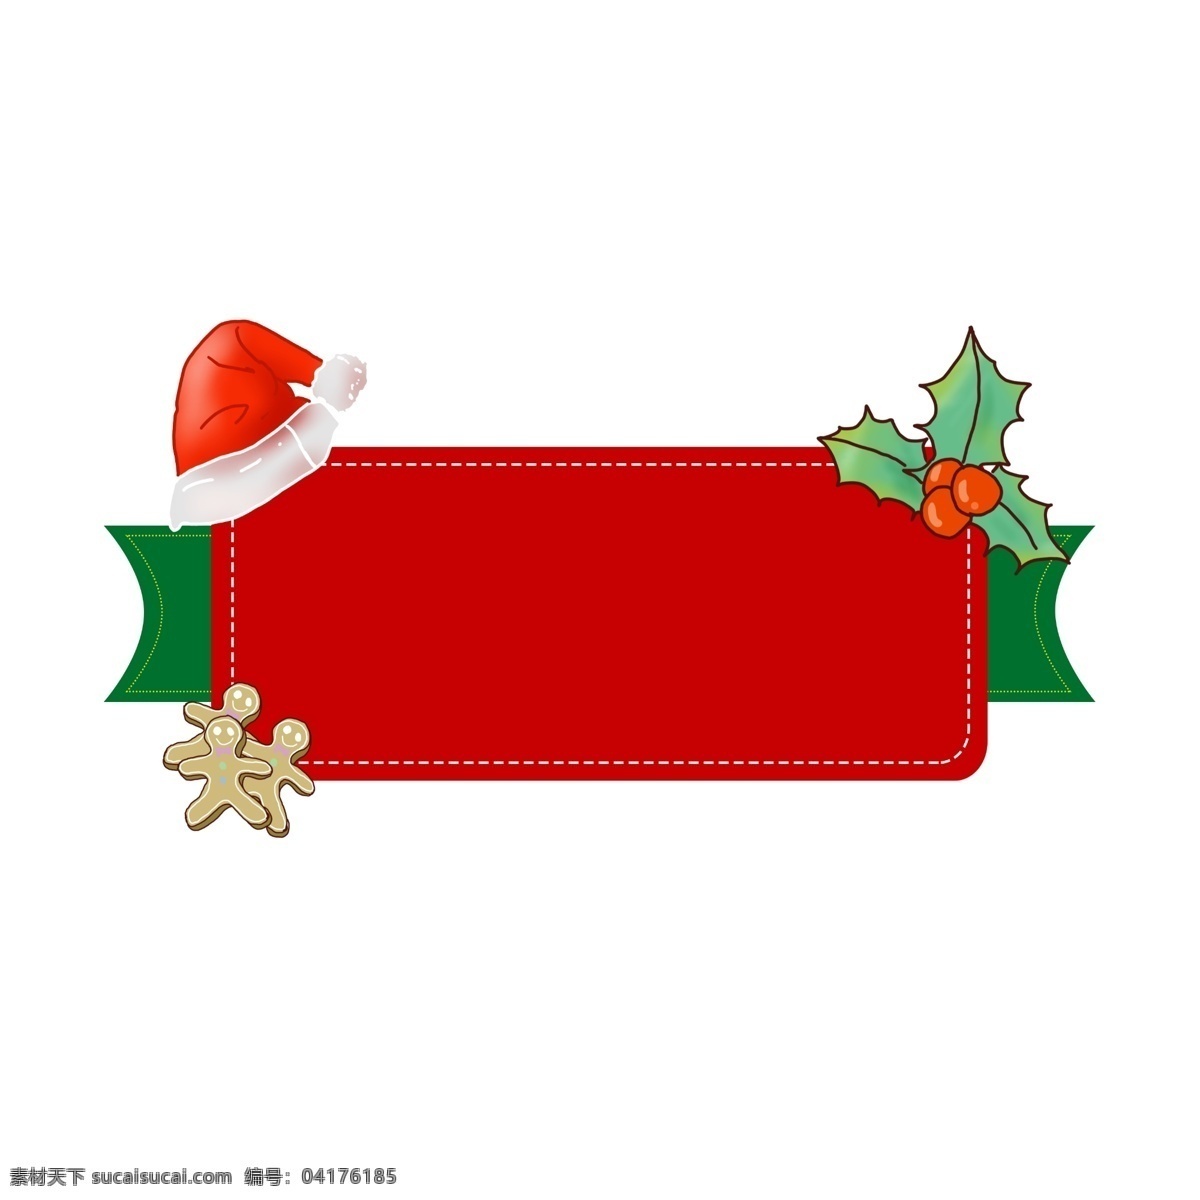 圣诞节 手绘 边框 姜饼 边框简单 姜饼小人 麋鹿 圣诞帽 圣诞 可爱 矢量 简单 手绘边框 可爱手绘